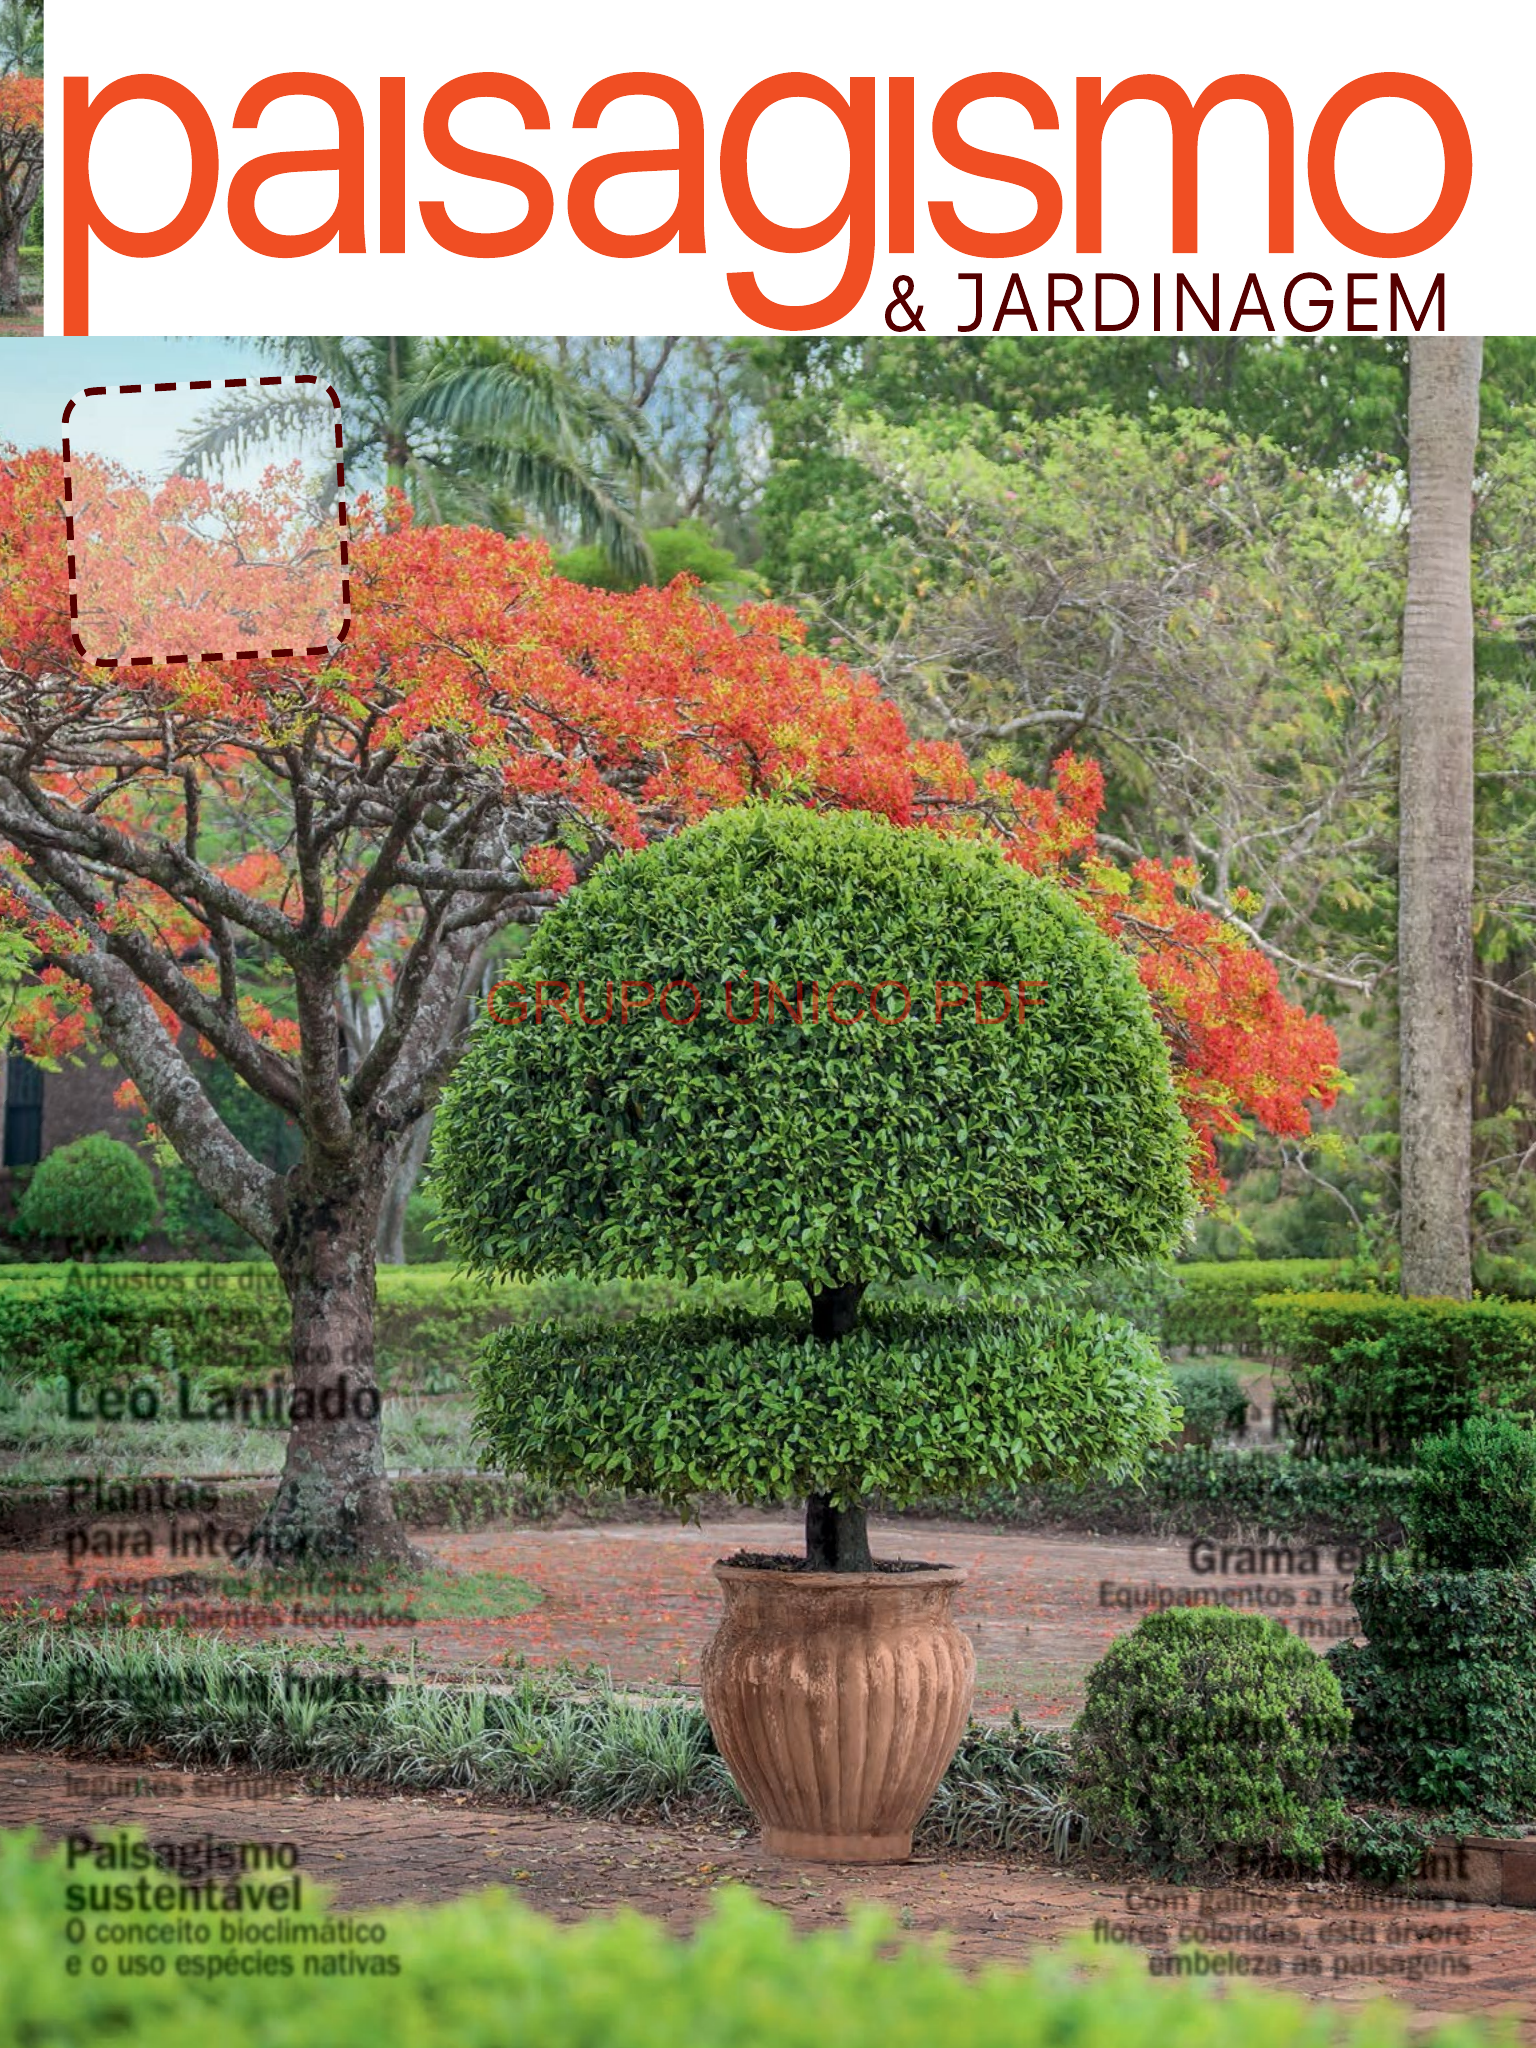 Mémento des plantes de jardins paysagers - hortivar - 9782917308141 - Livre  